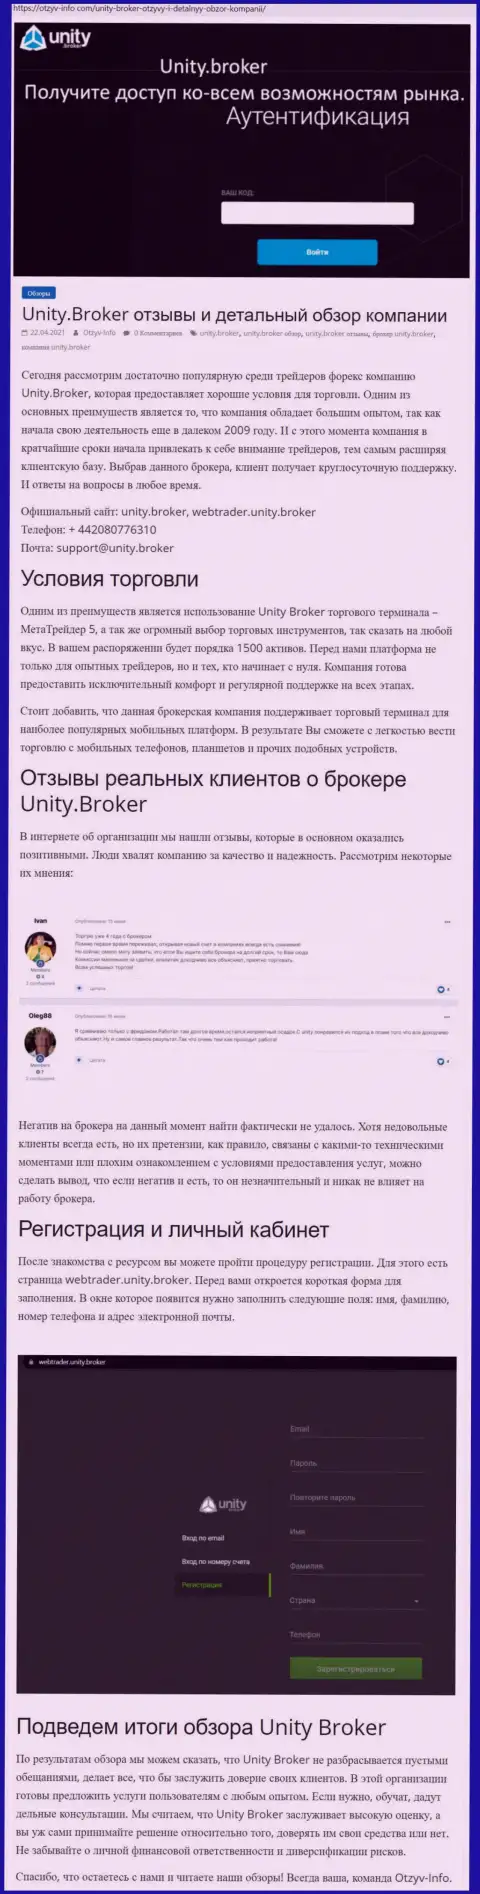 Обзор работы Форекс-дилинговой организации Unity Broker на сайте Отзыв-Инфо Ком